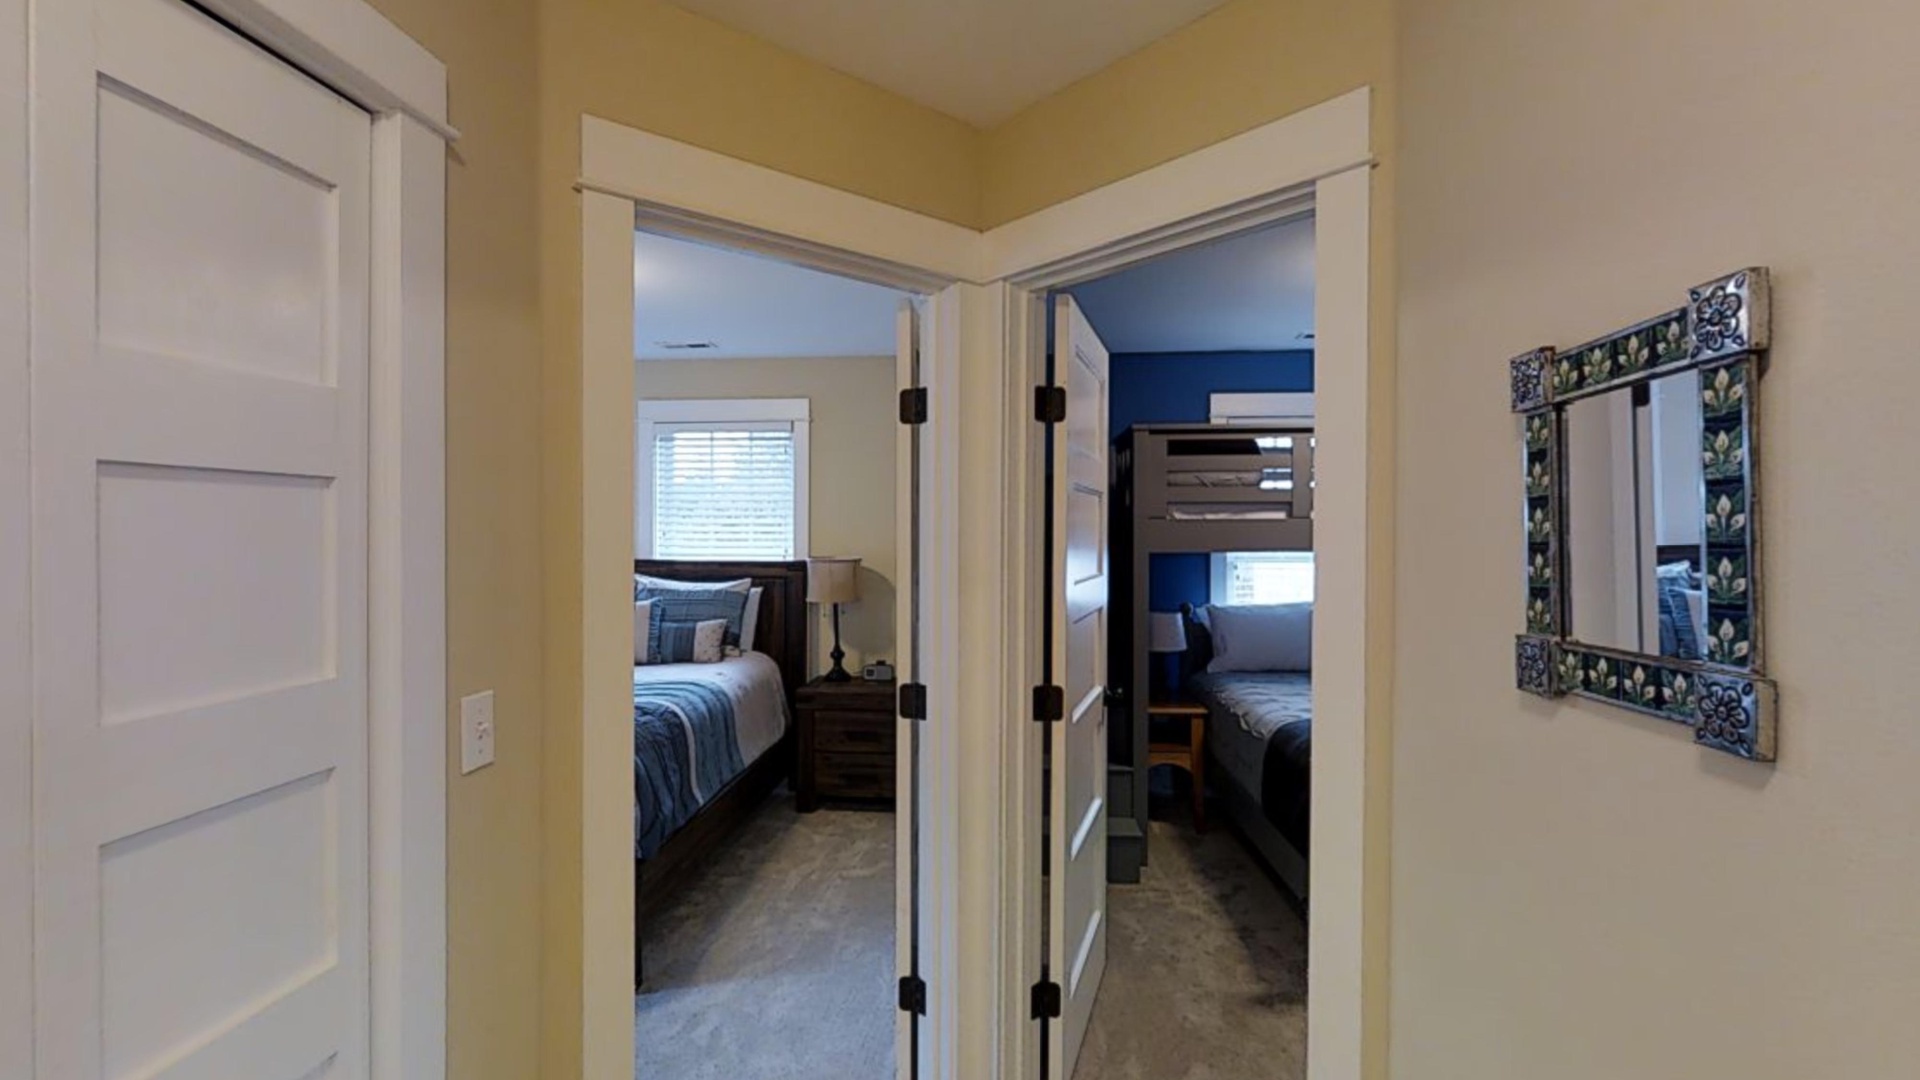 Guest queen bedroom and bunk room